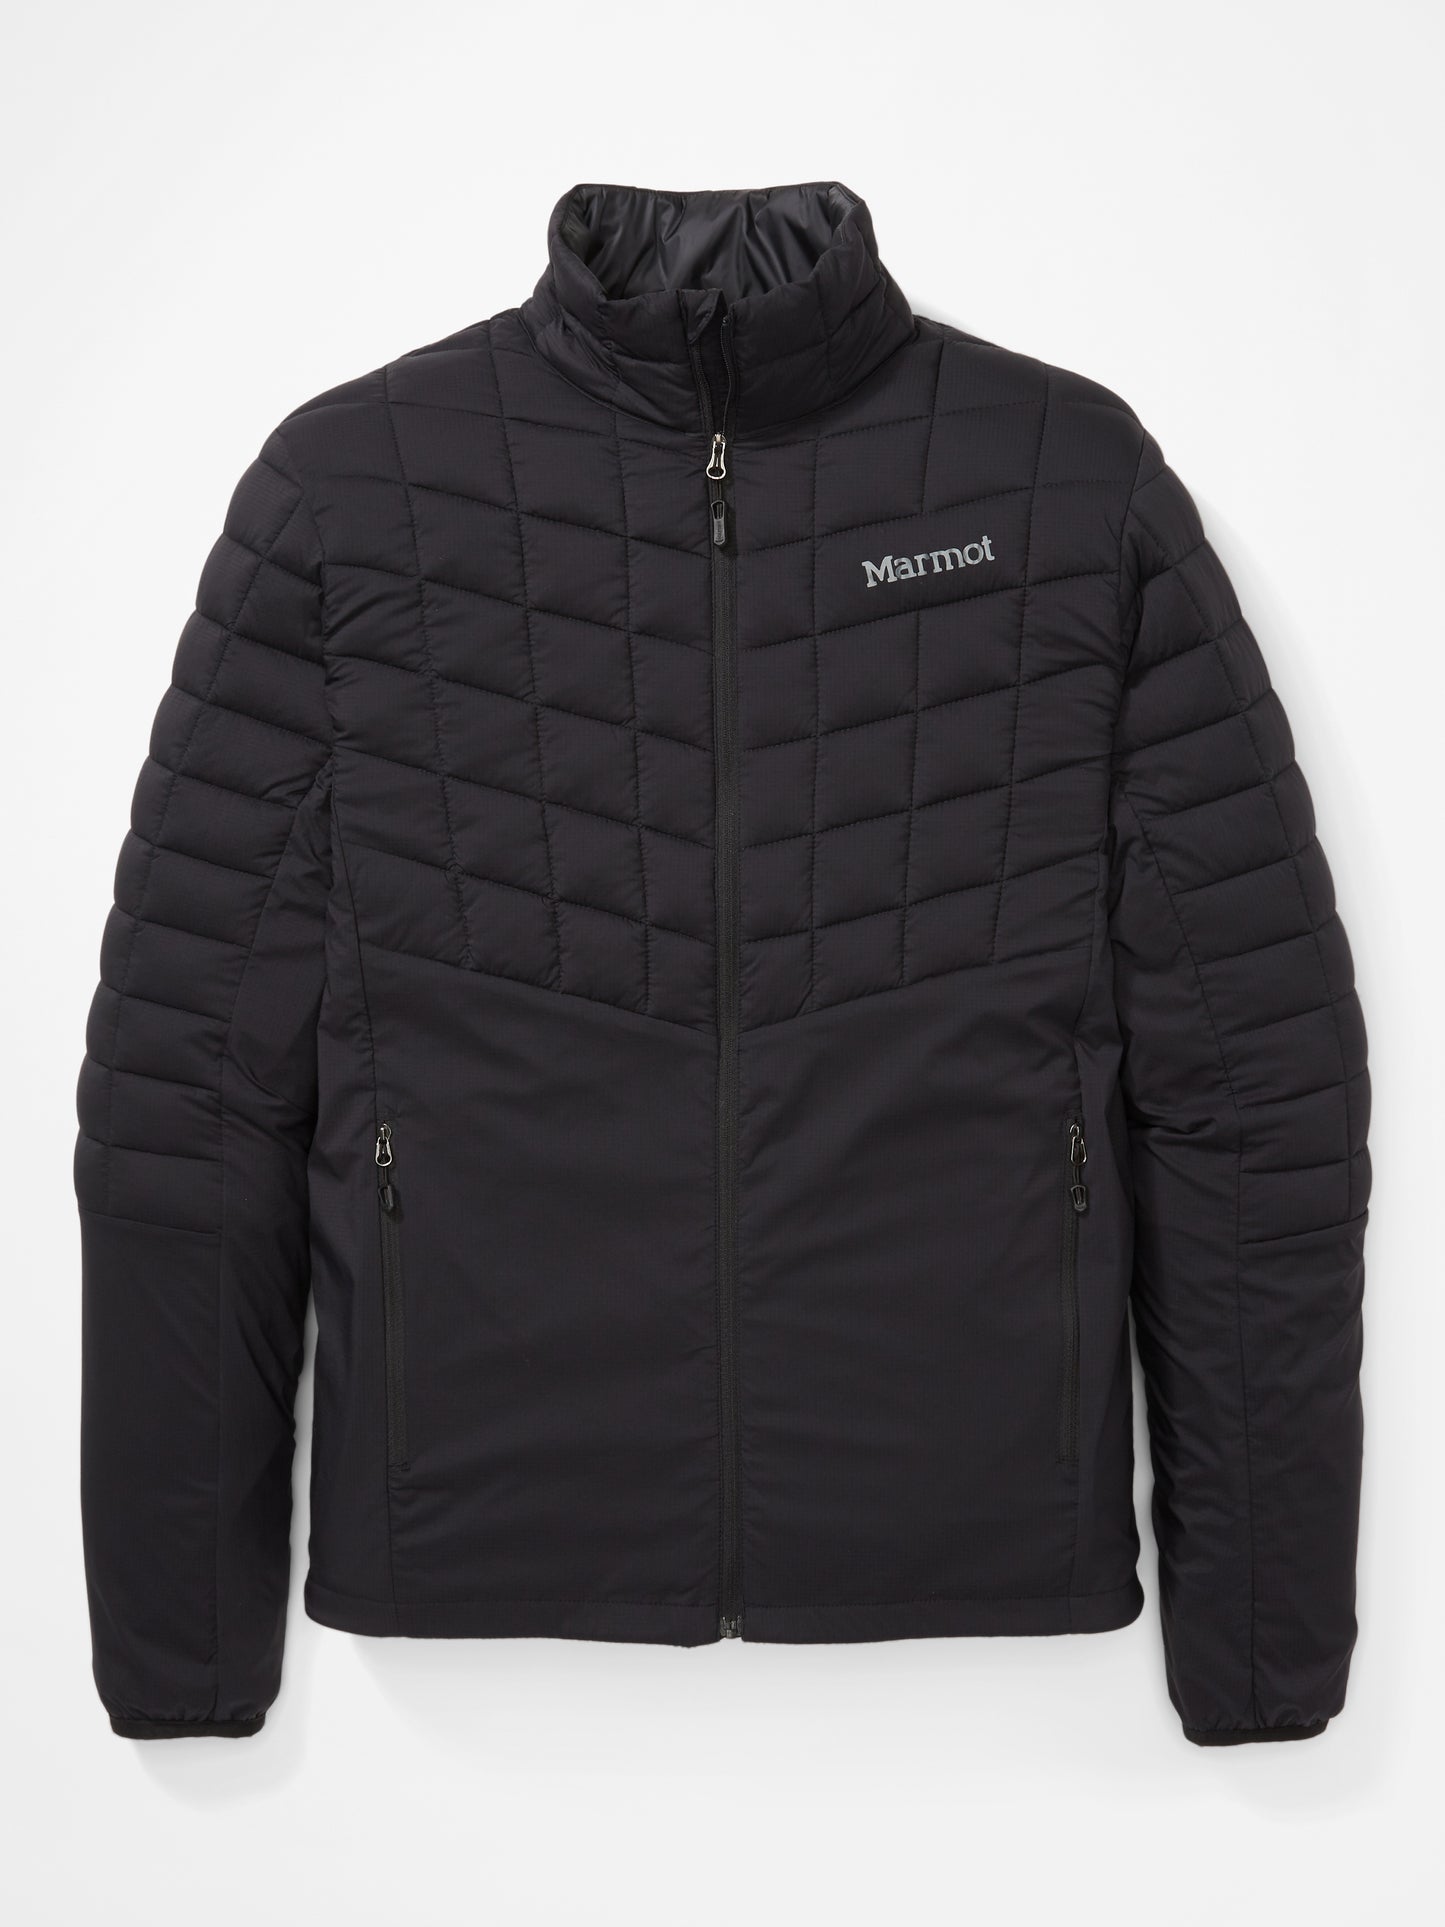 Men's Featherless Hybrid Jacket by Marmot